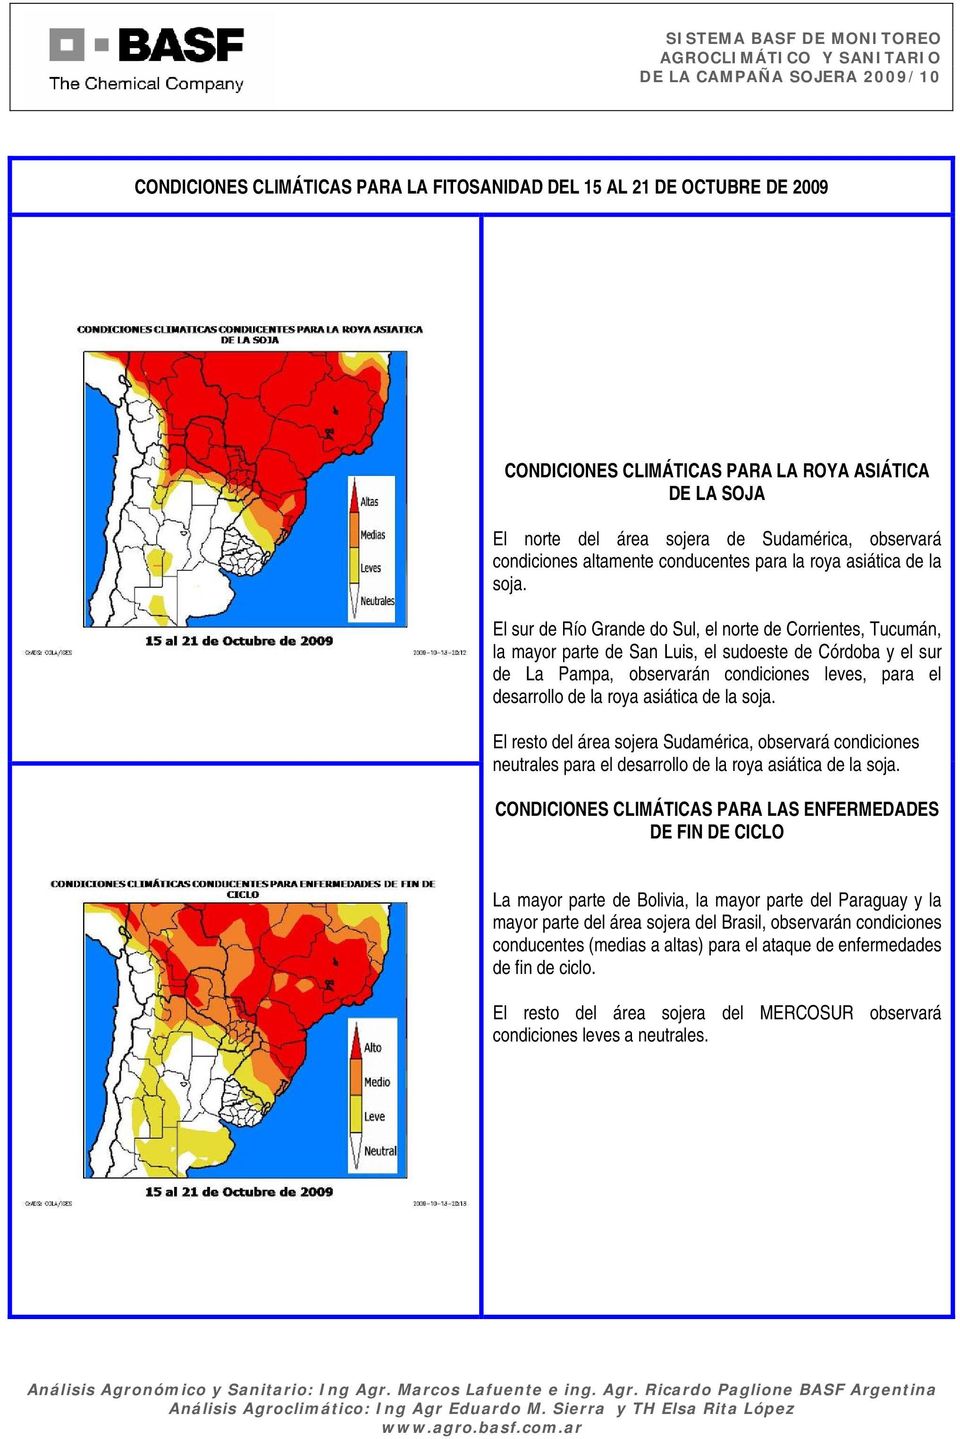 El sur de Río Grande do Sul, el norte de Corrientes, Tucumán, la mayor parte de San Luis, el sudoeste de Córdoba y el sur de La Pampa, observarán condiciones leves, para el desarrollo de la roya